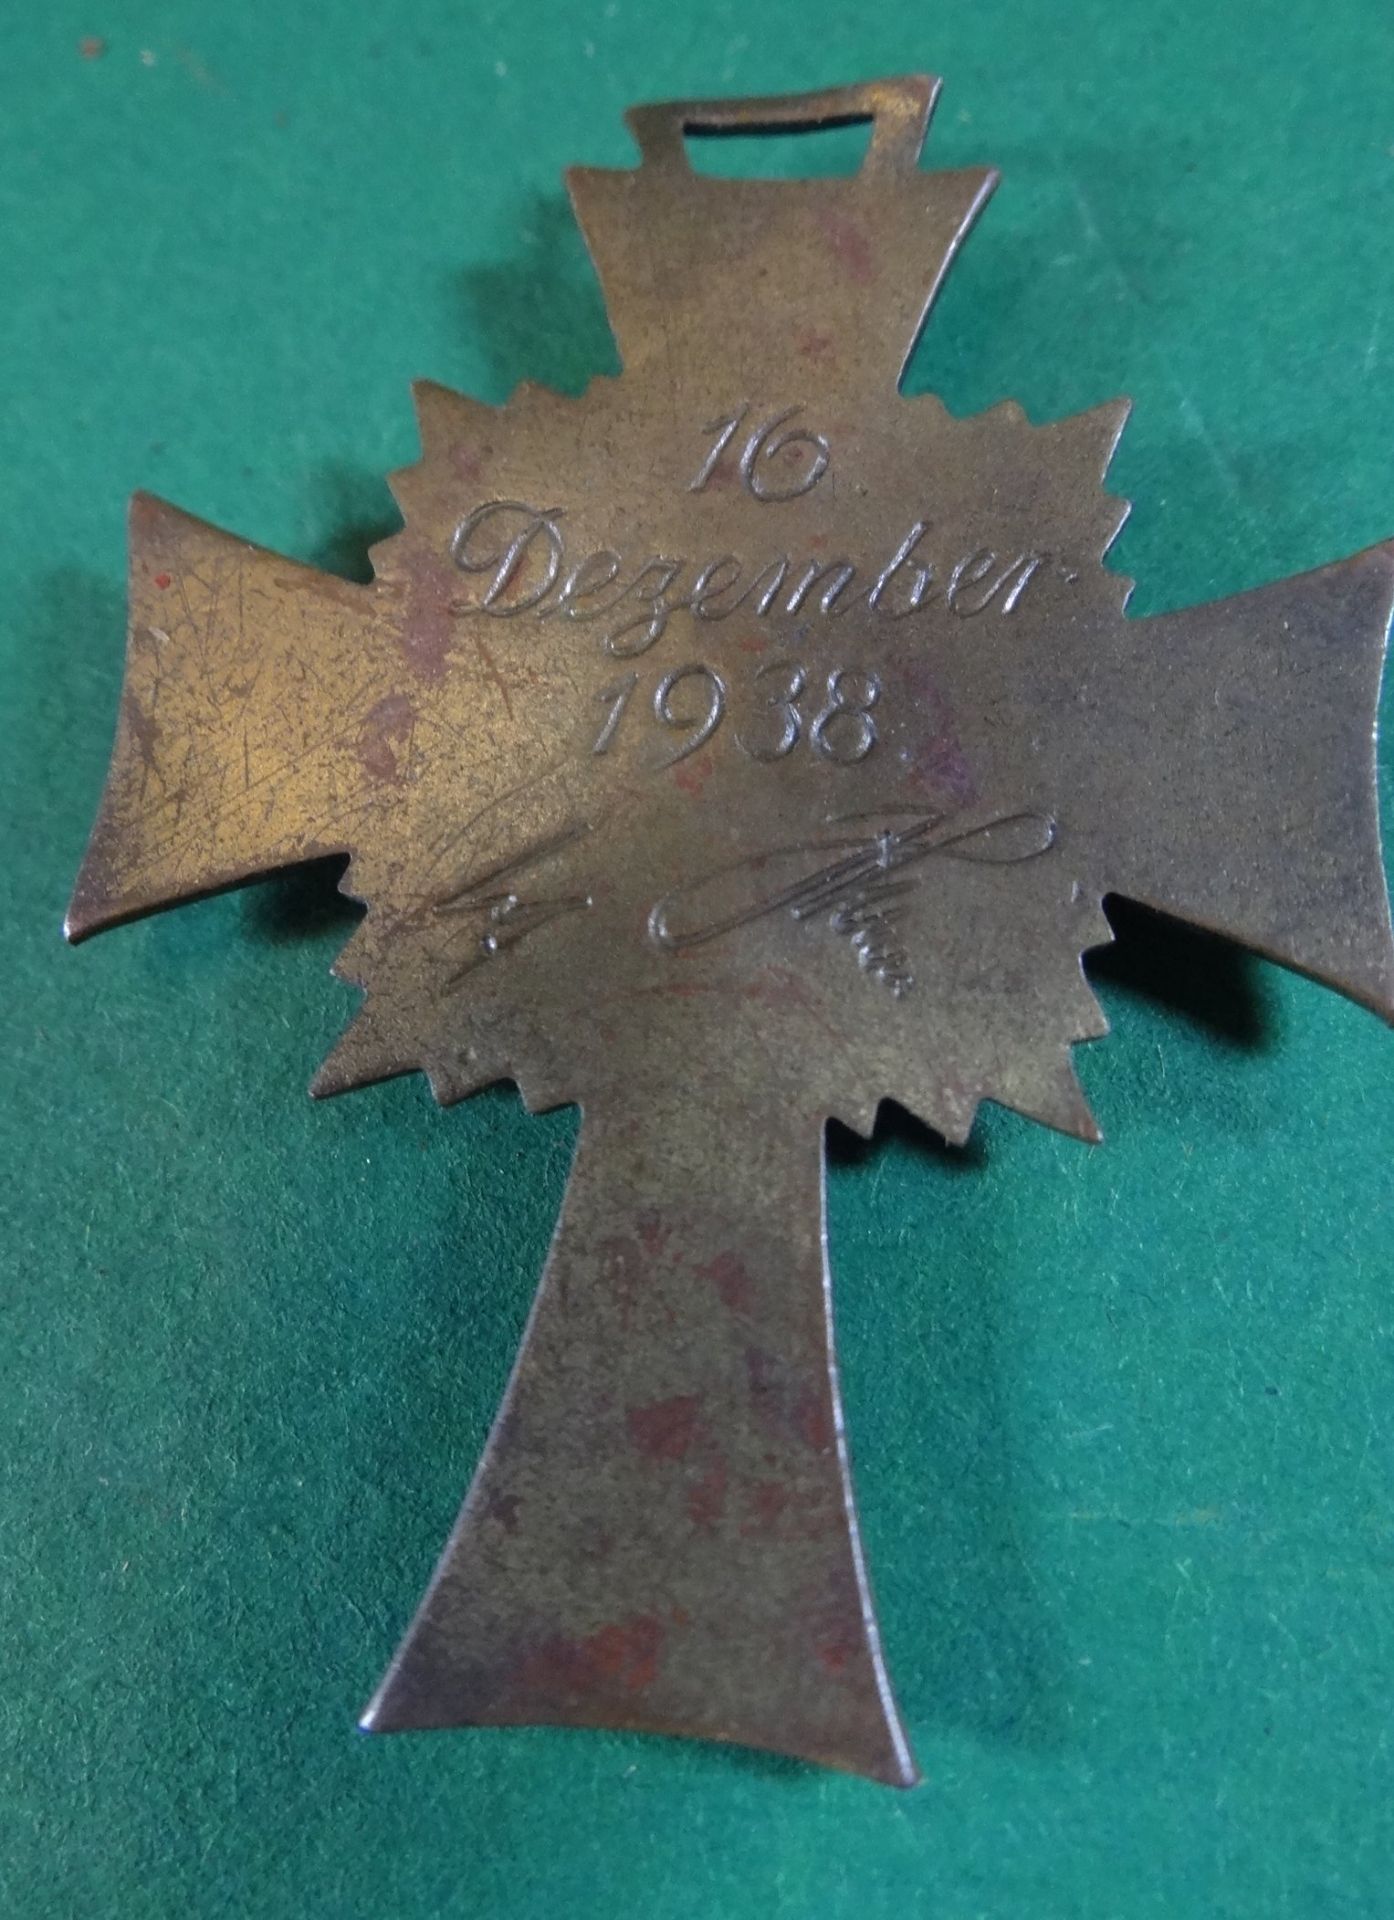 Mutterkreuz, 16 Dec. 1938 datiert - Bild 2 aus 2